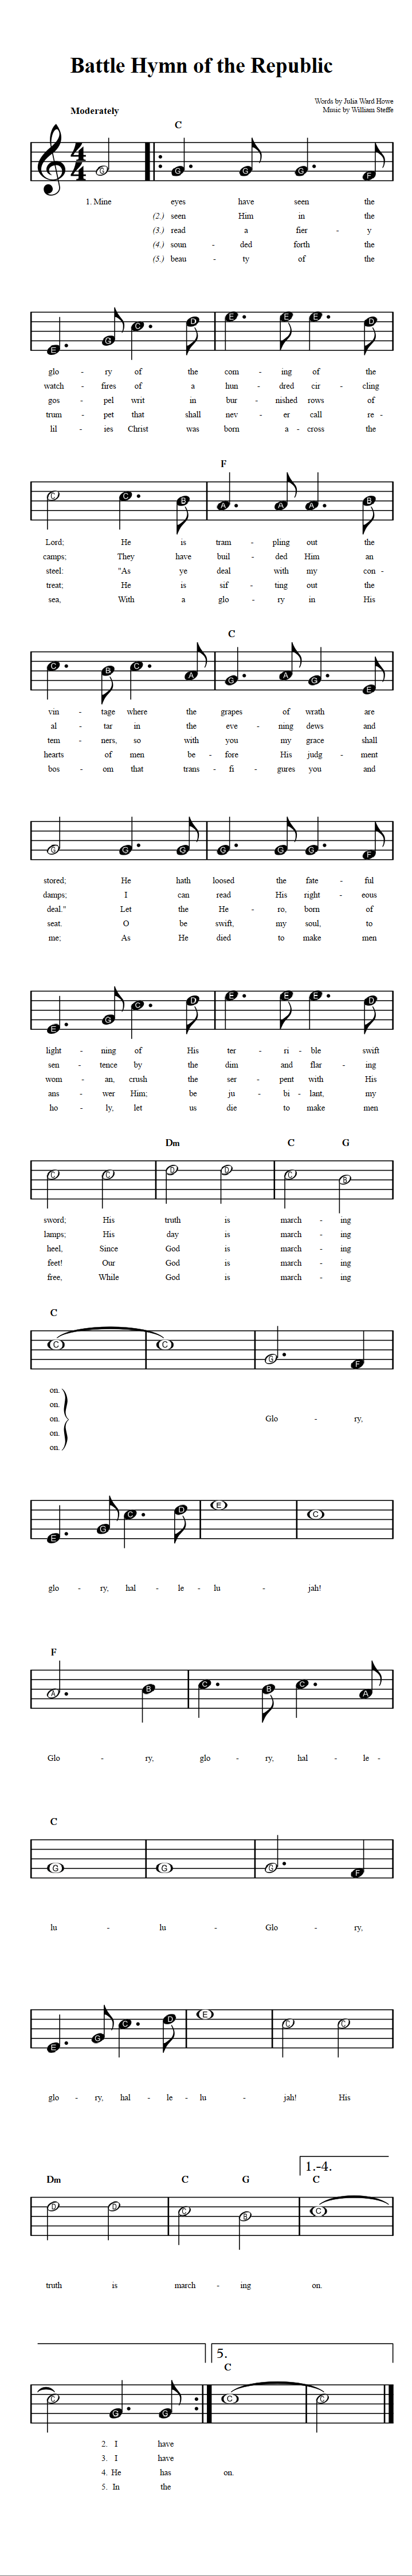 Battle Hymn of the Republic  Beginner Sheet Music